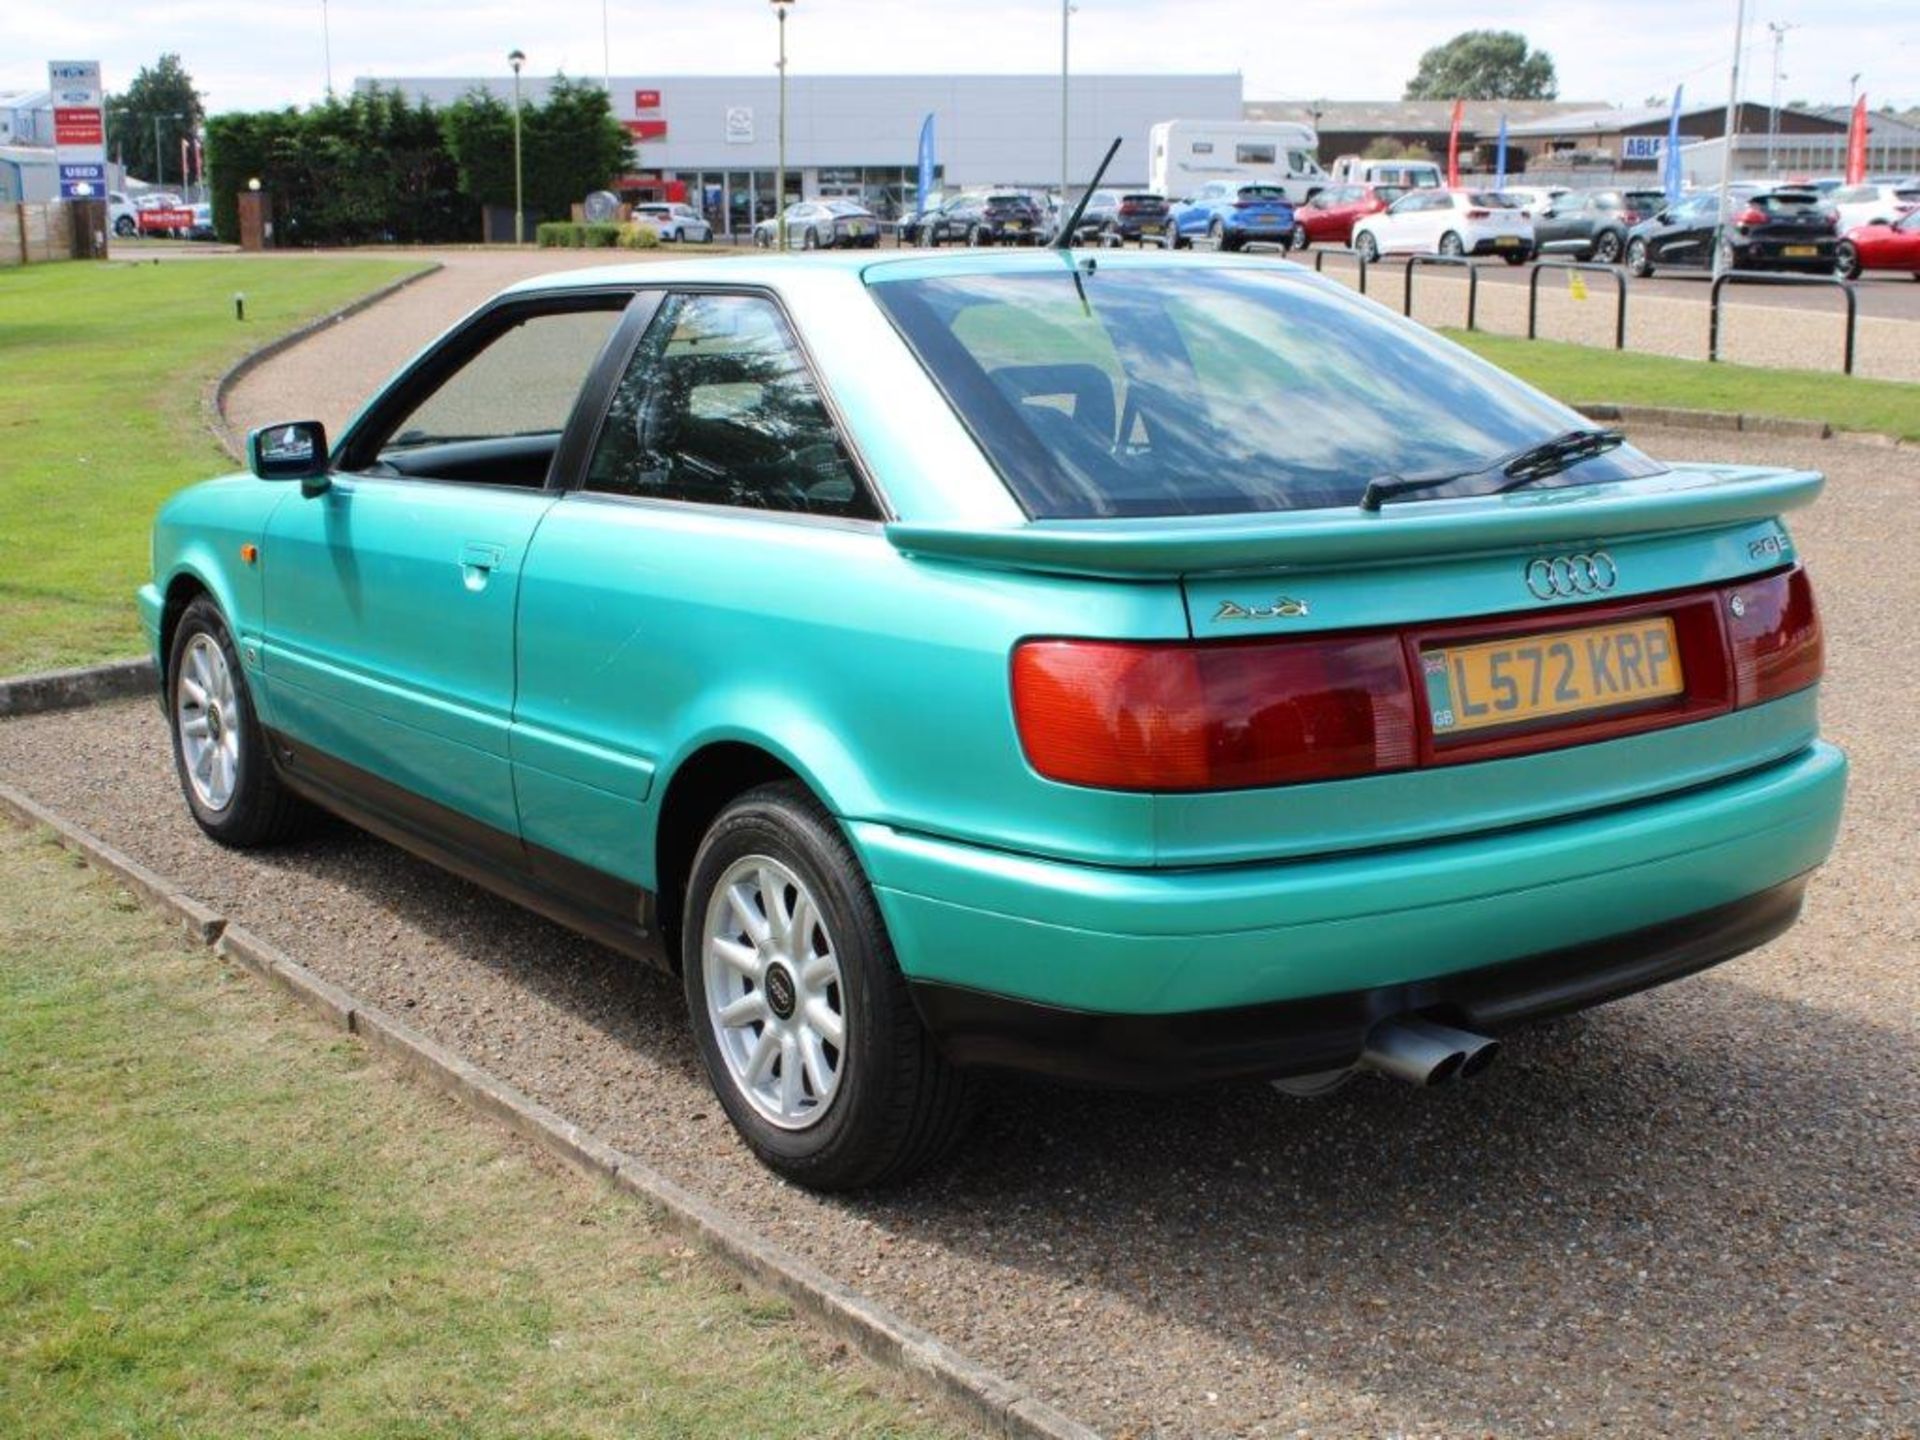 1994 Audi Coupe 2.6E - Image 4 of 20